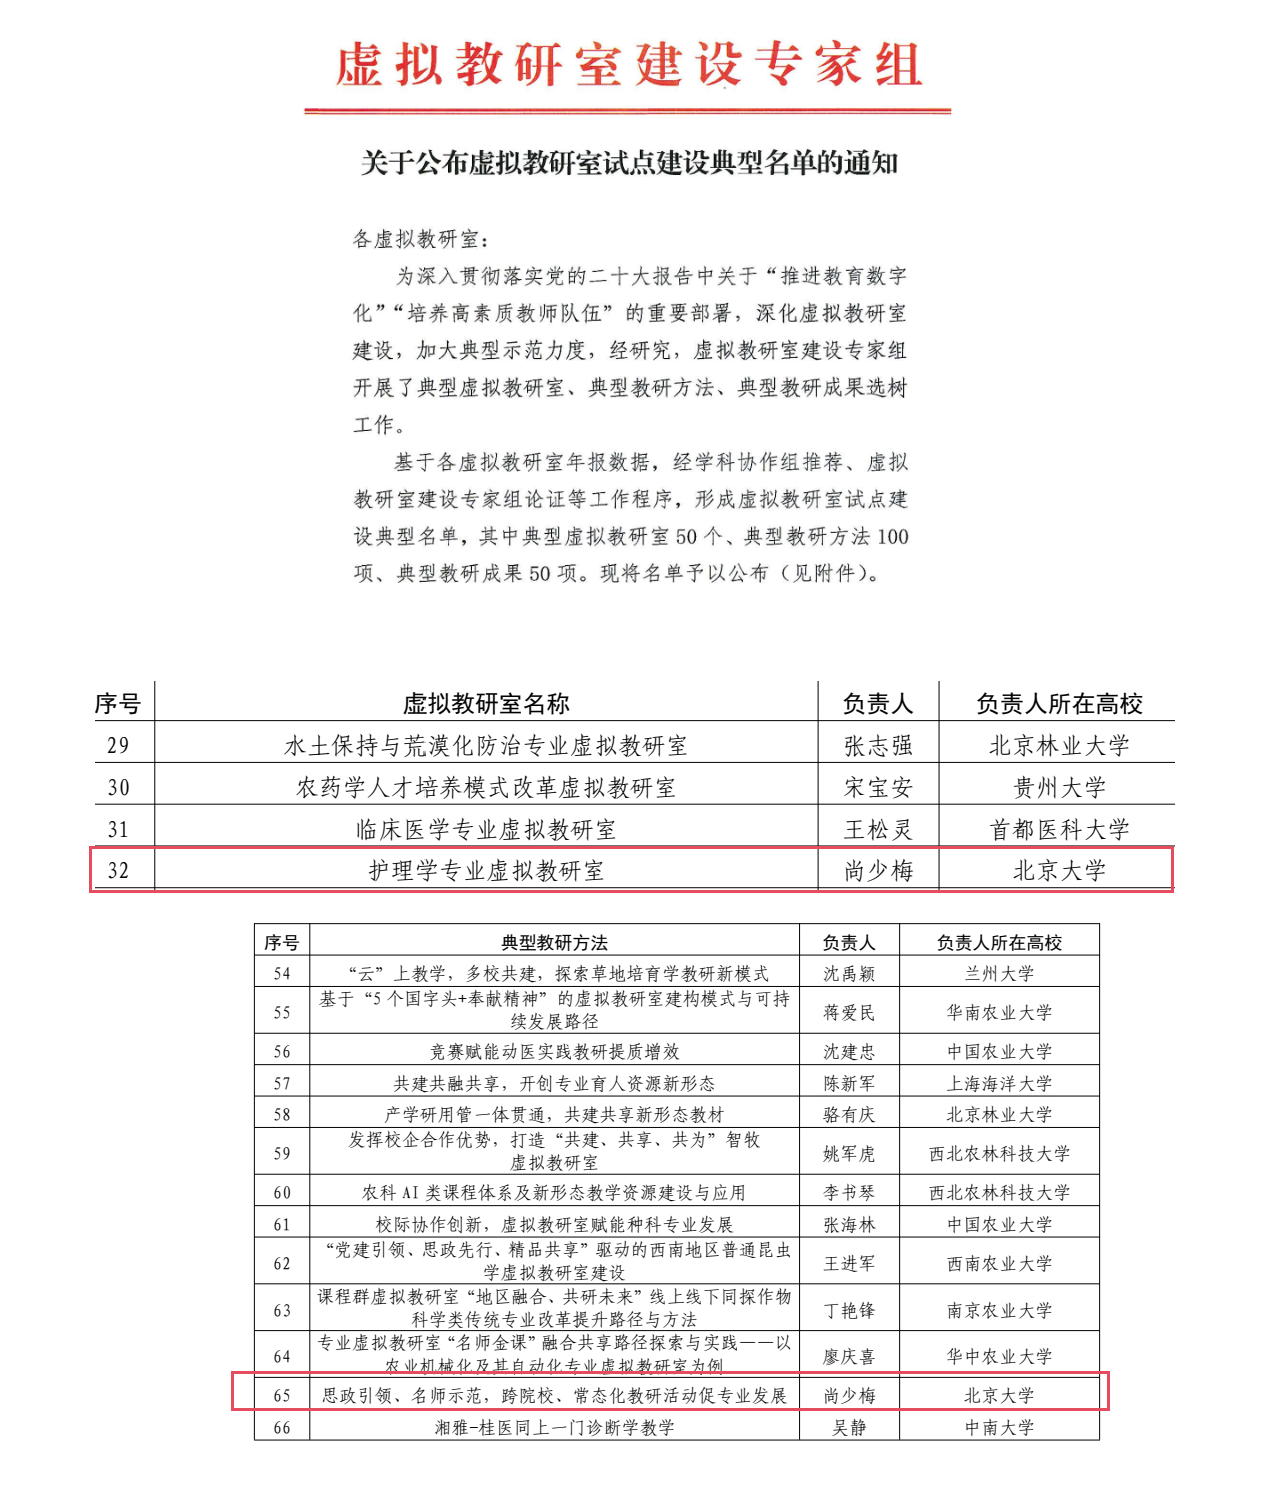 北京大学护理学院牵头的教育部护理学专业虚拟教研室入选试点建设典型名单(20231215)_01.png